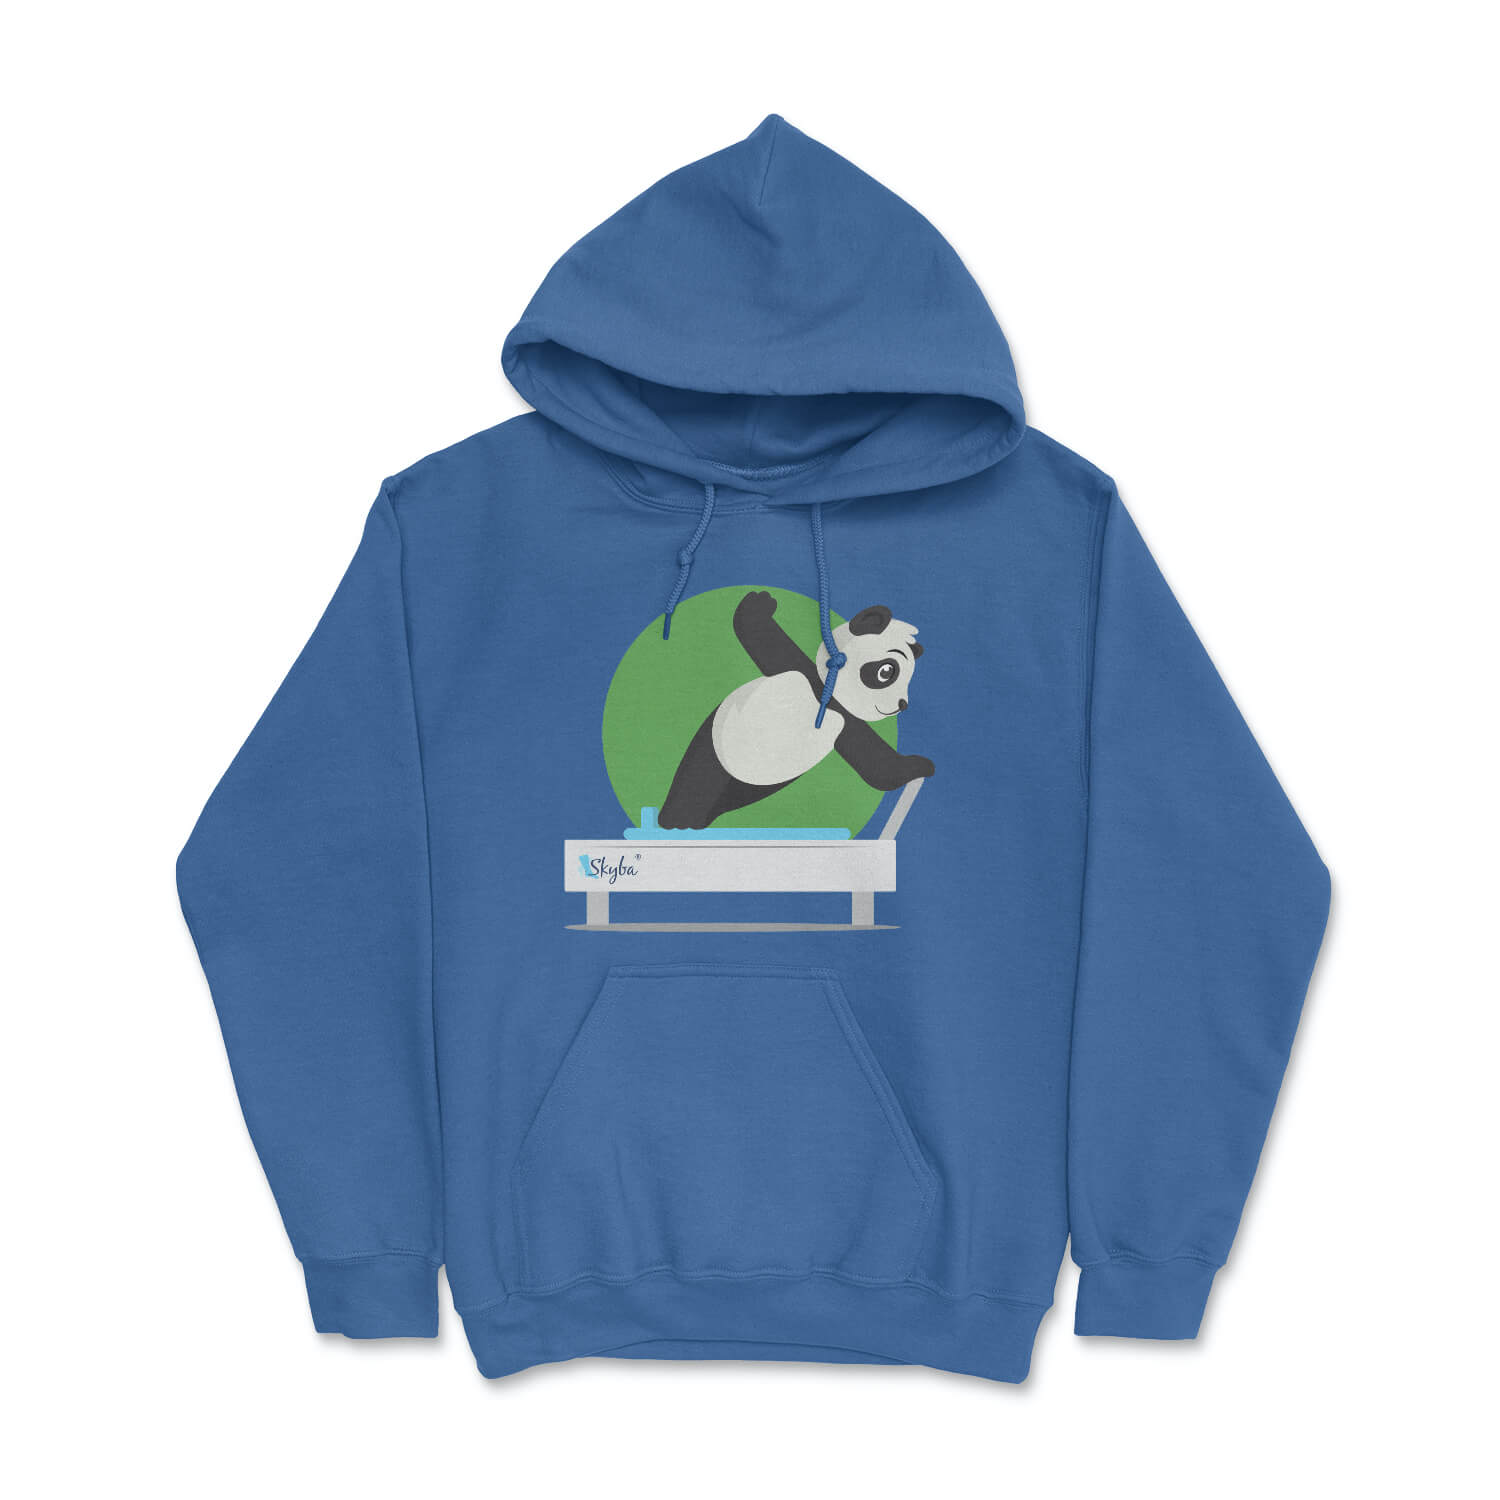 Panda Side Plank - Cozy Hooded Sweatshirt Skyba Hoodie